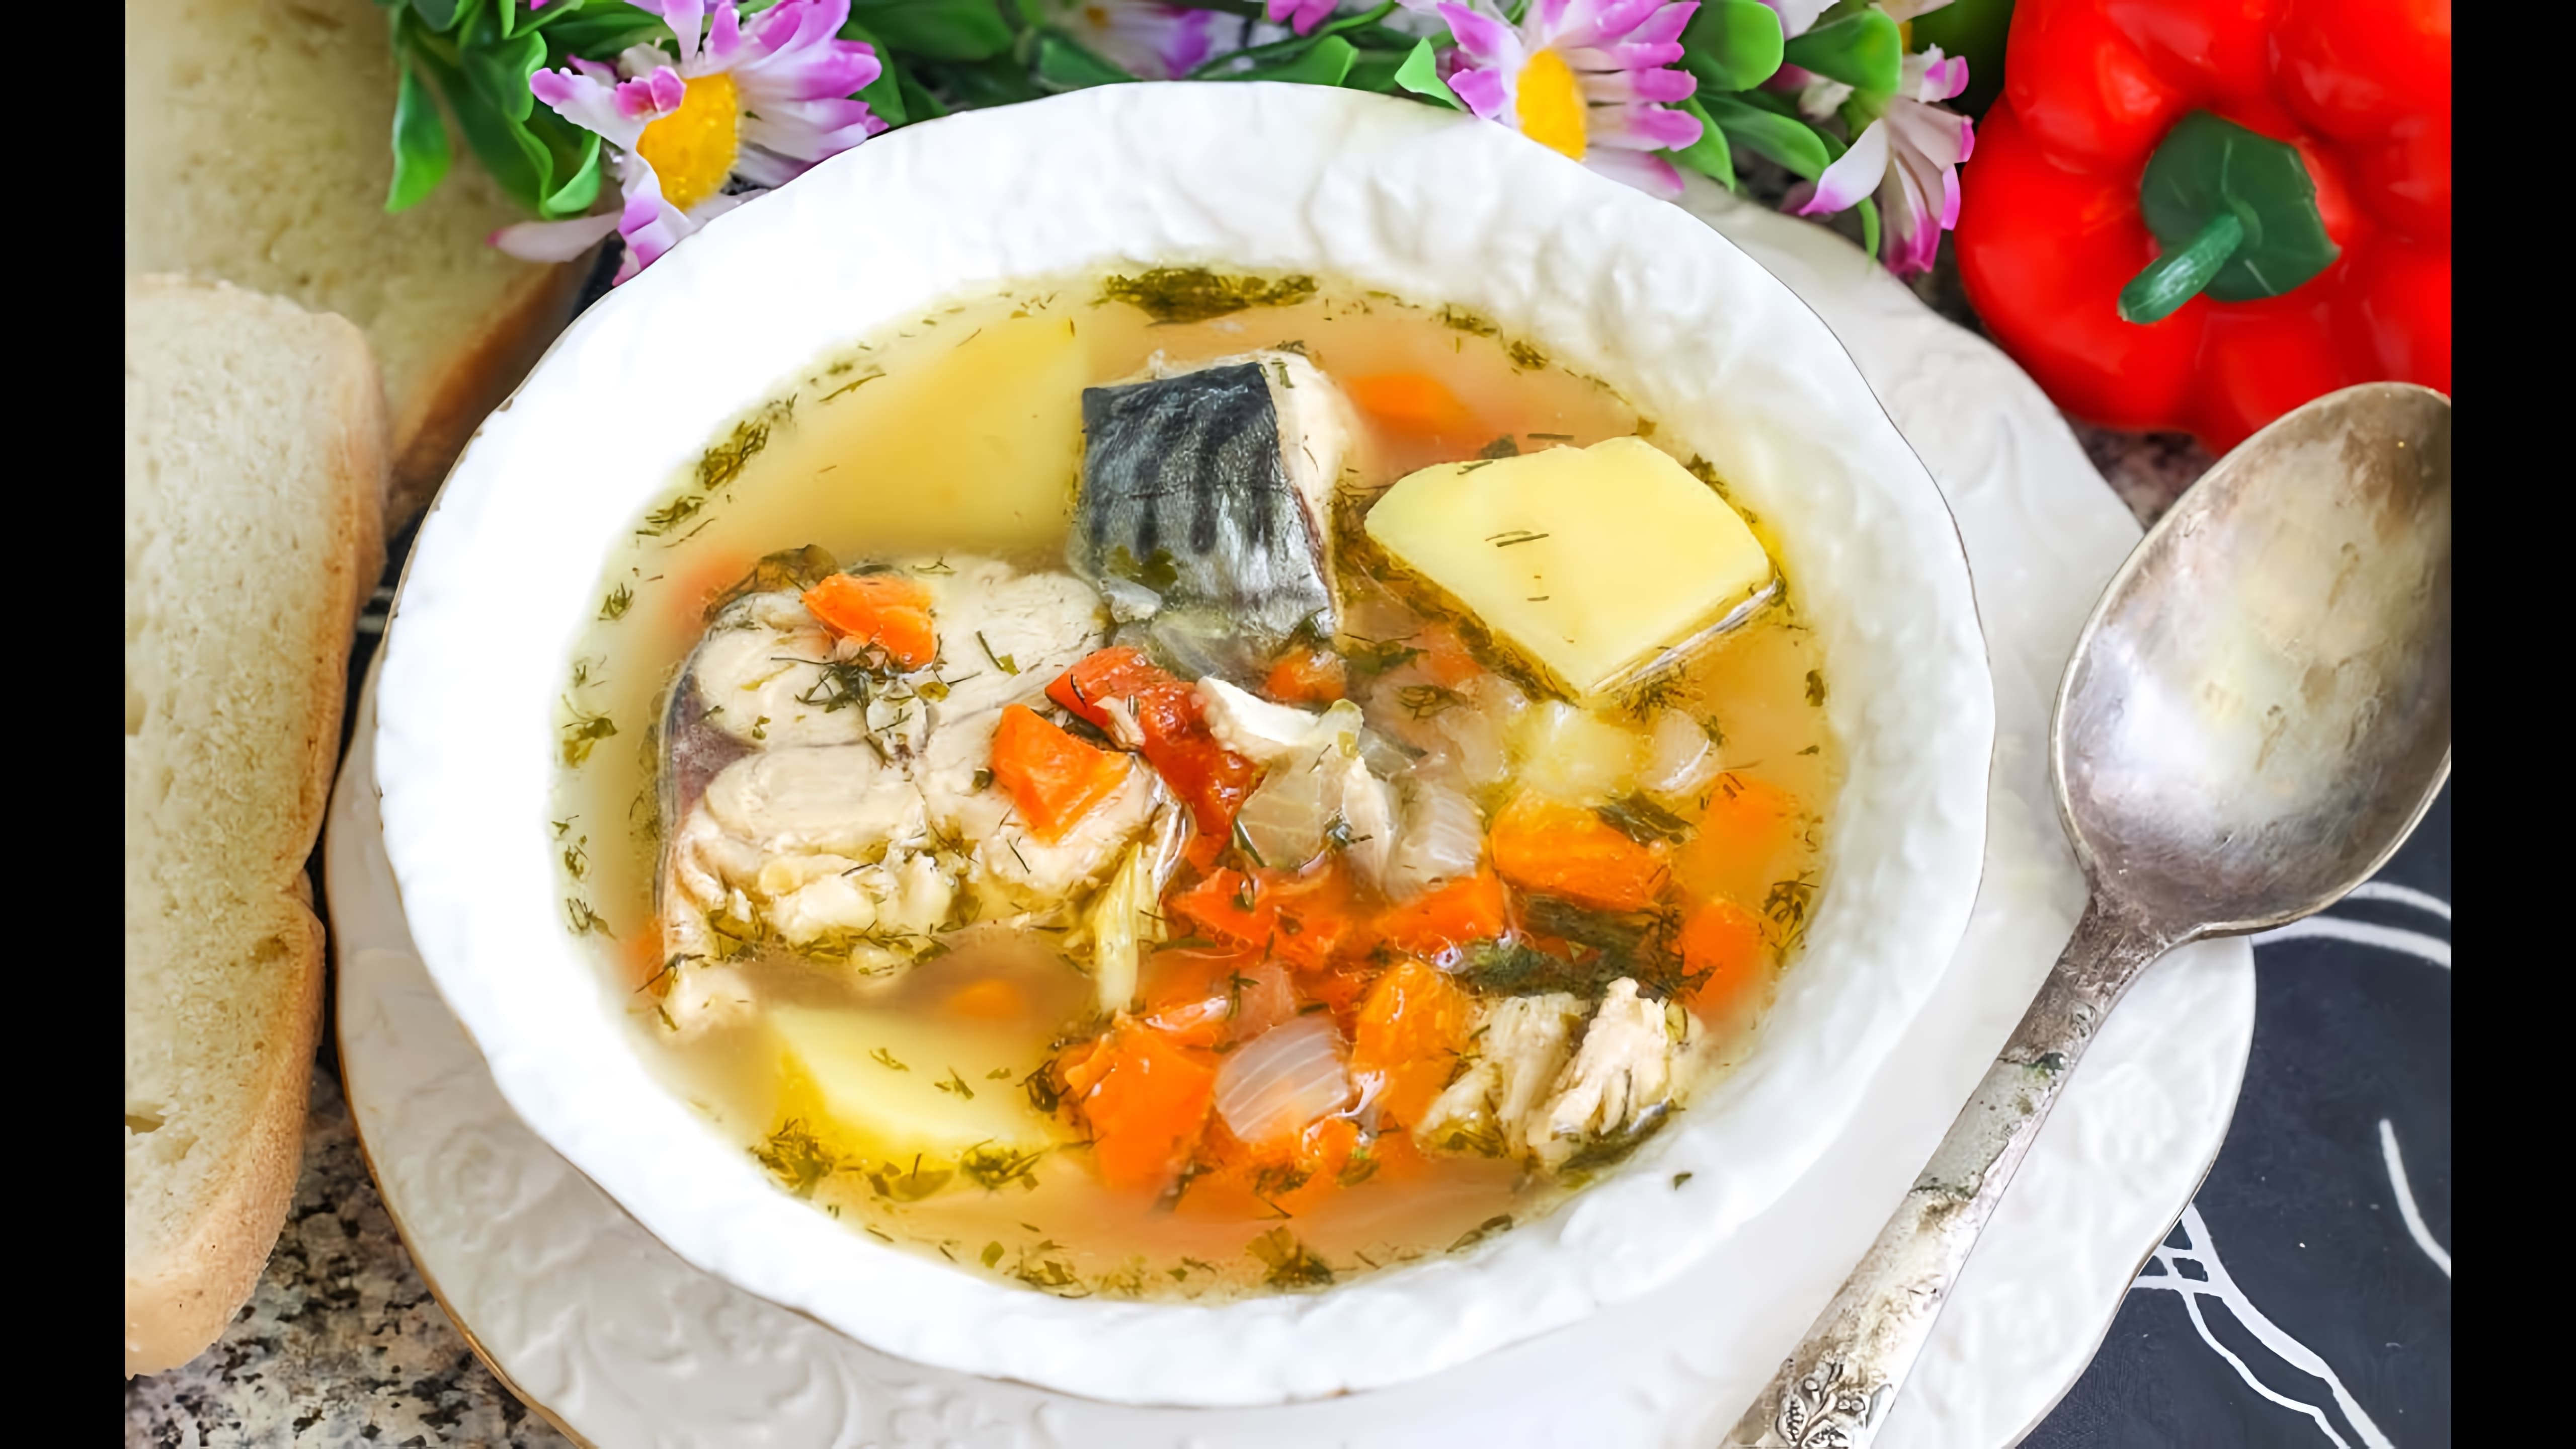 Суп из свежемороженой скумбрии - это вкусный и наваристый рыбный суп, который можно приготовить в домашних условиях